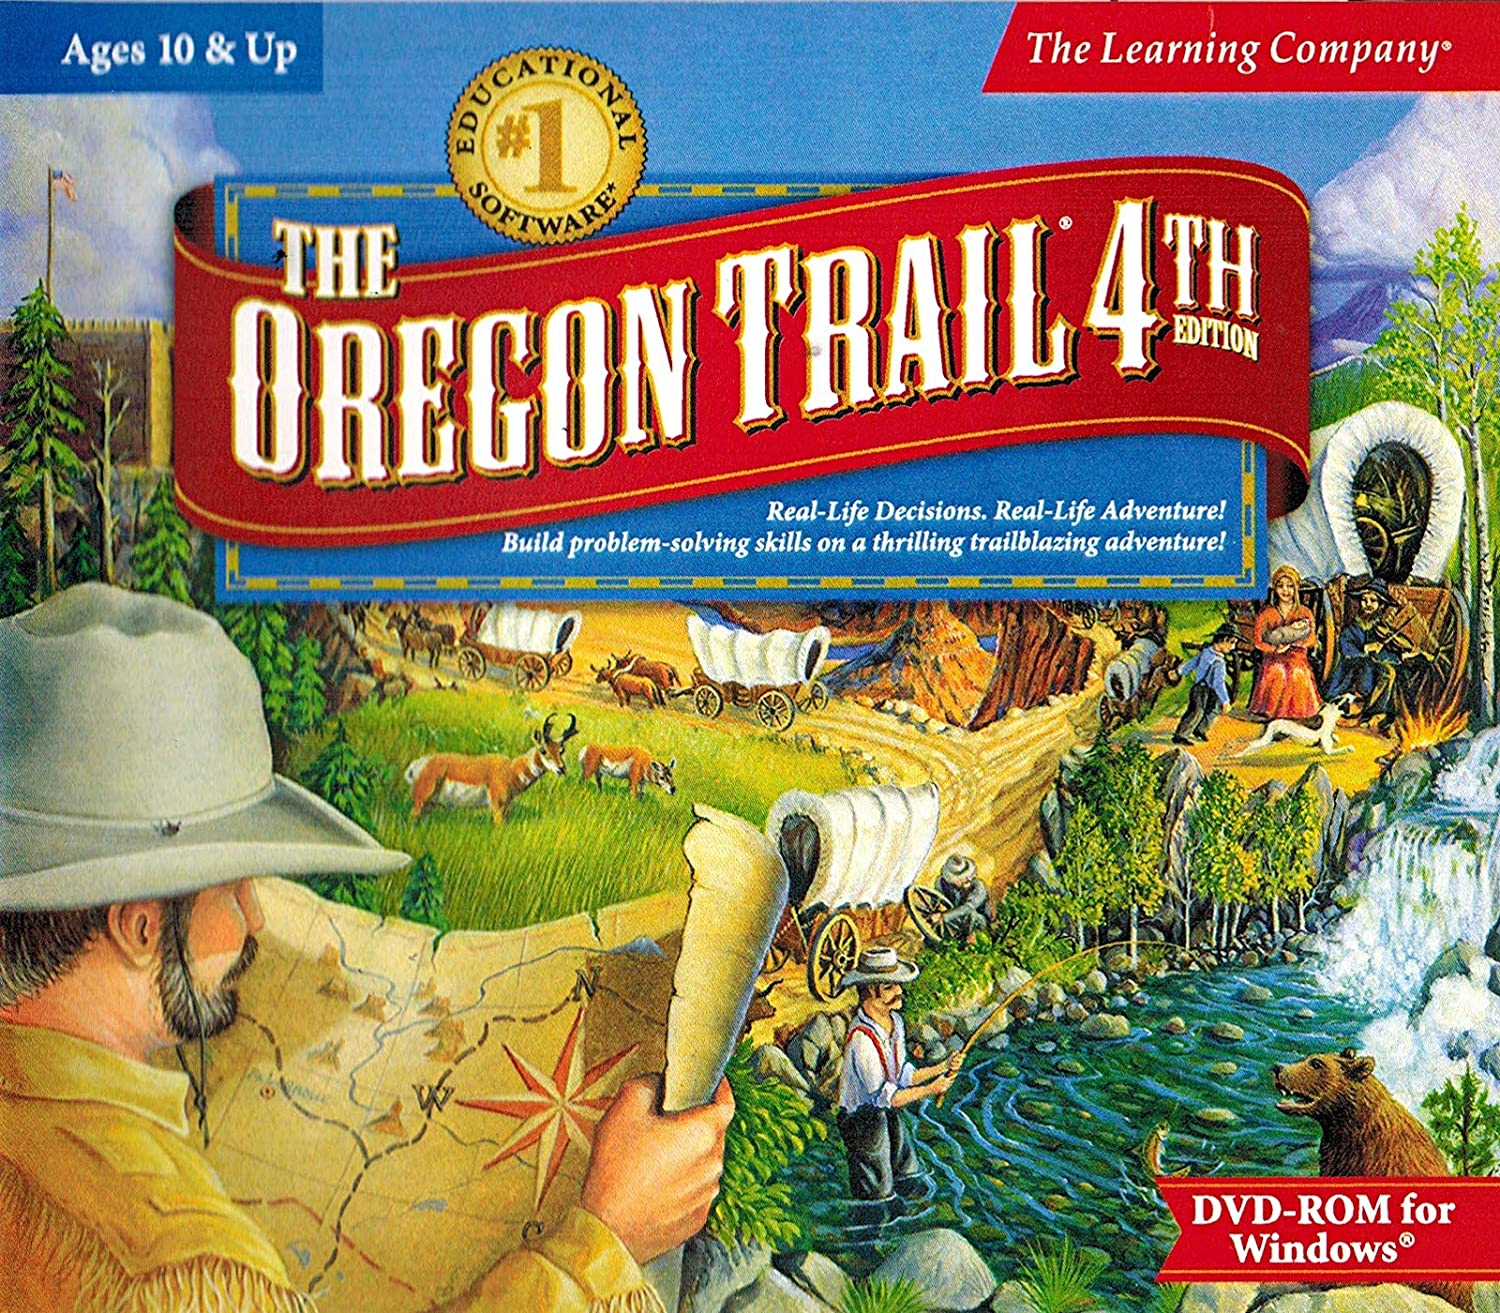 The Oregon Trail 4th Edition - Wikipedia